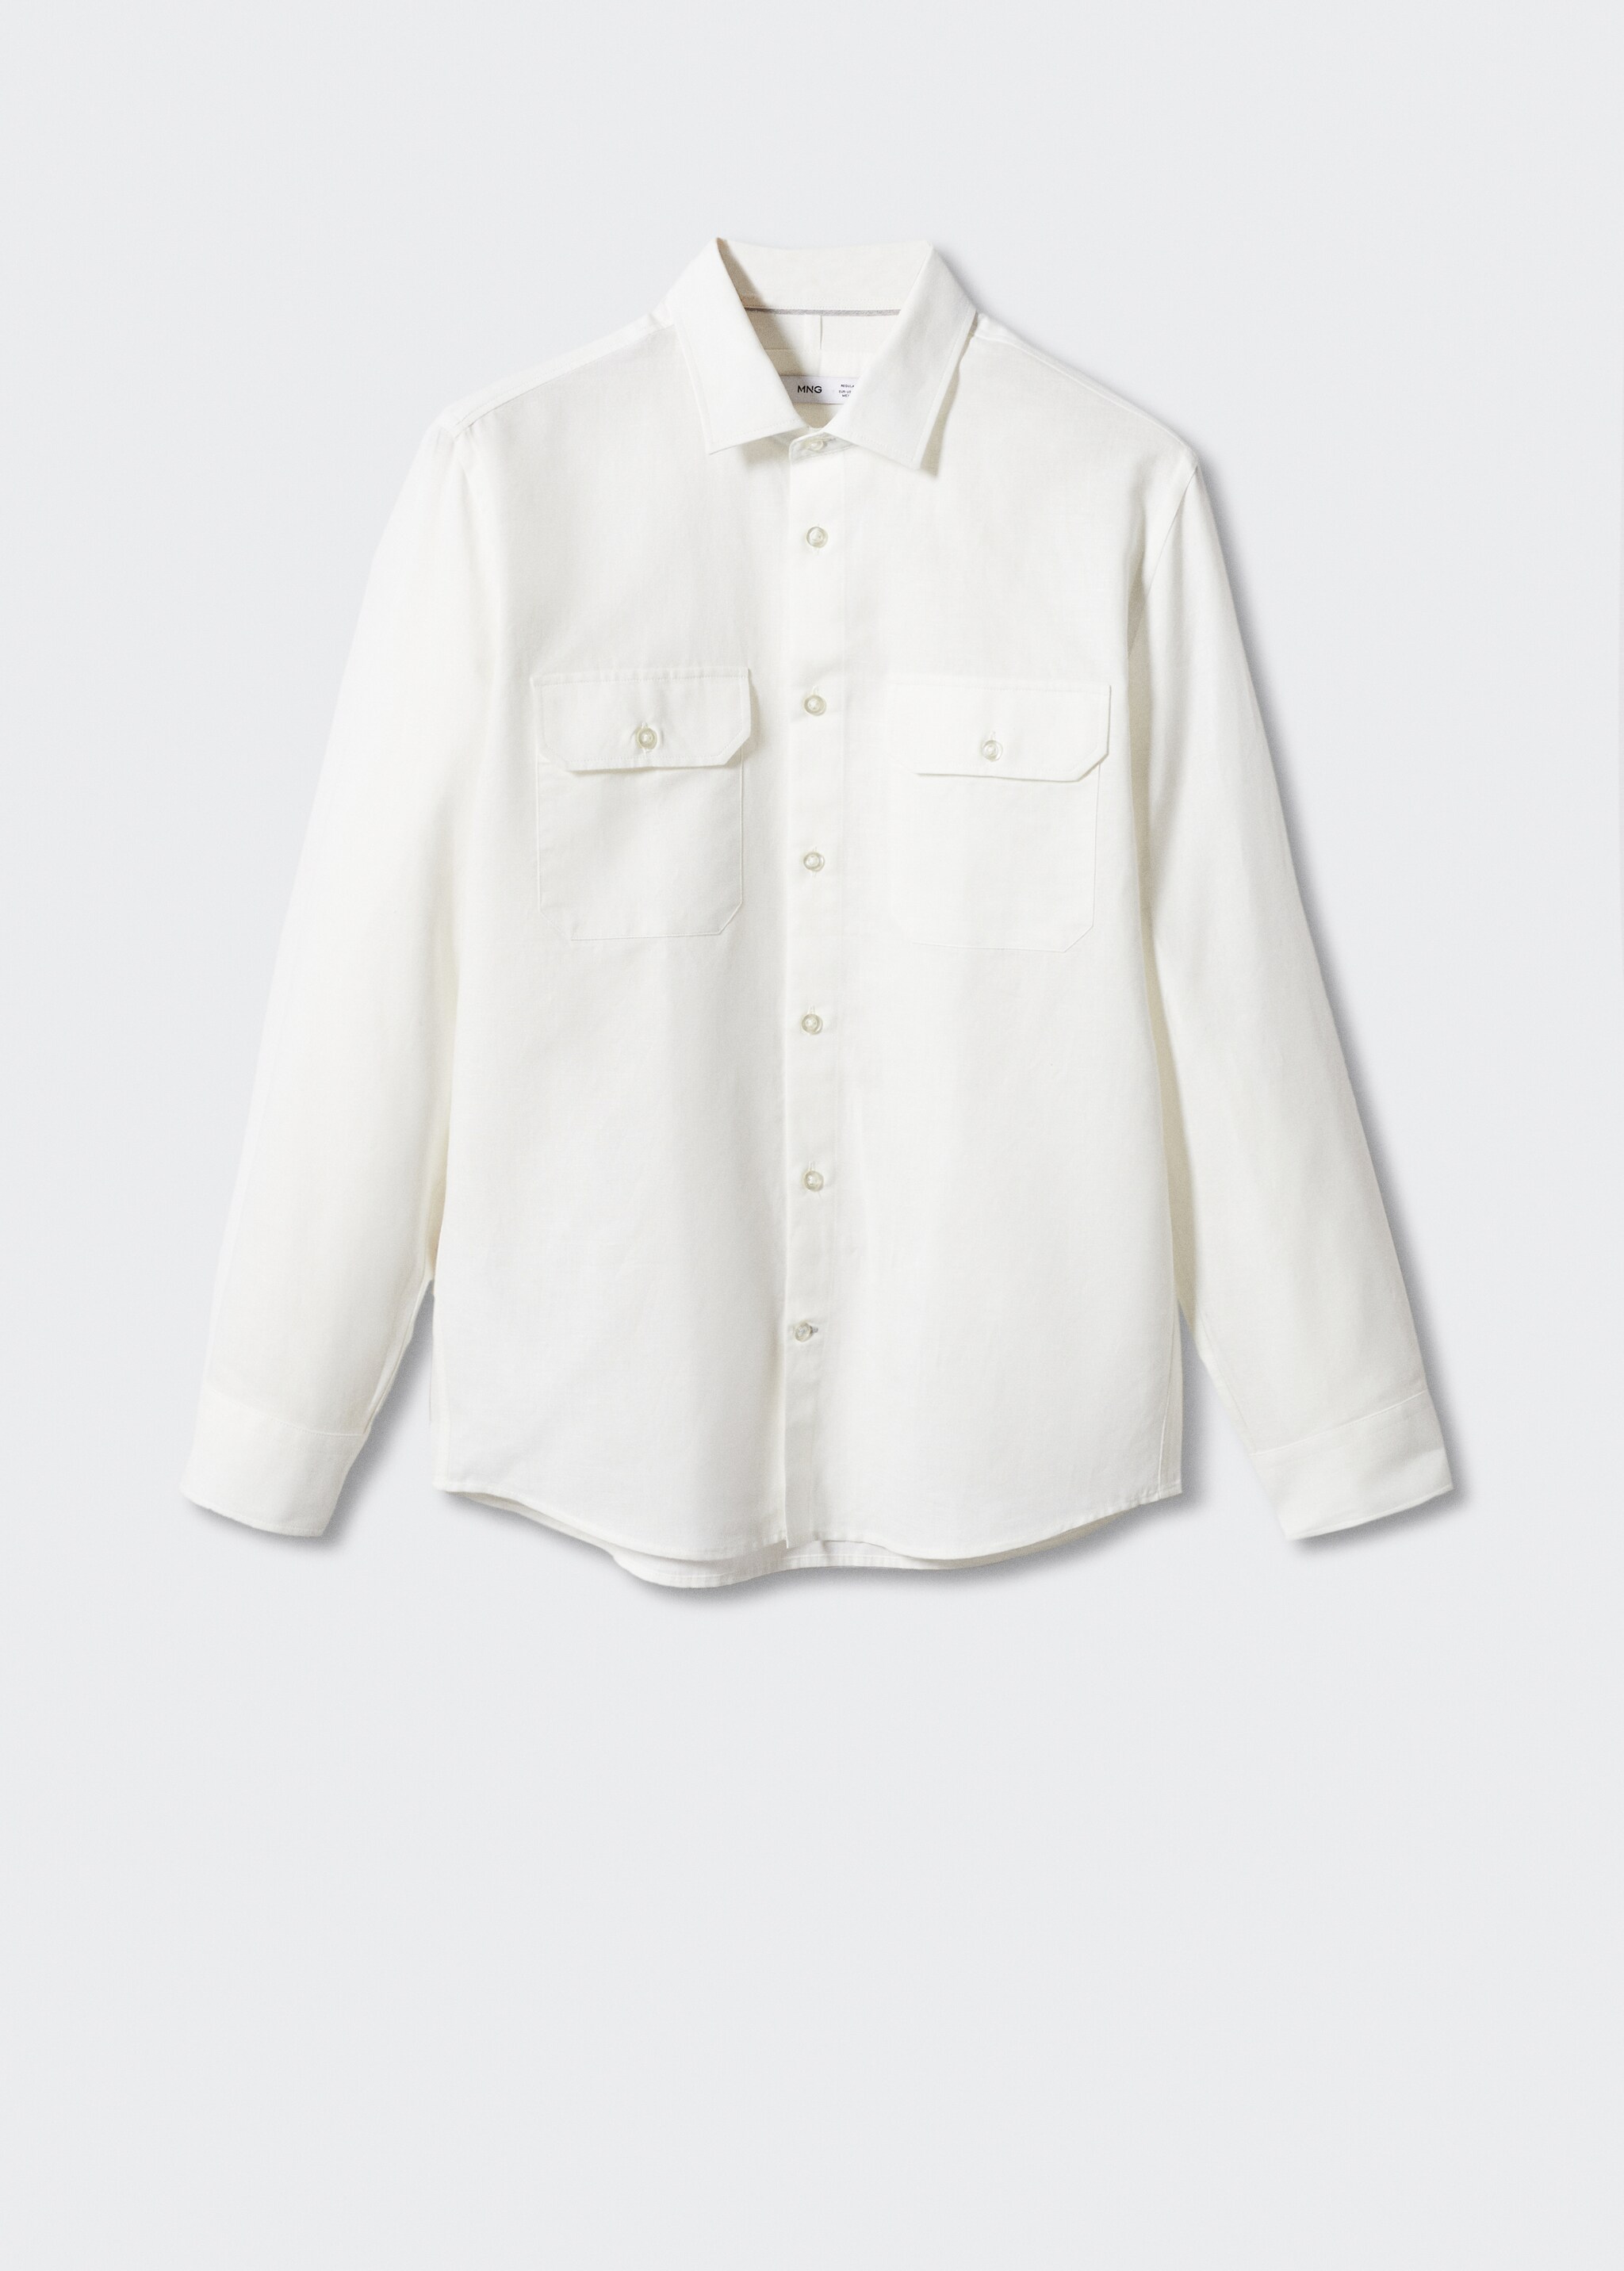 Camisa regular fit lino bolsillos - Artículo sin modelo